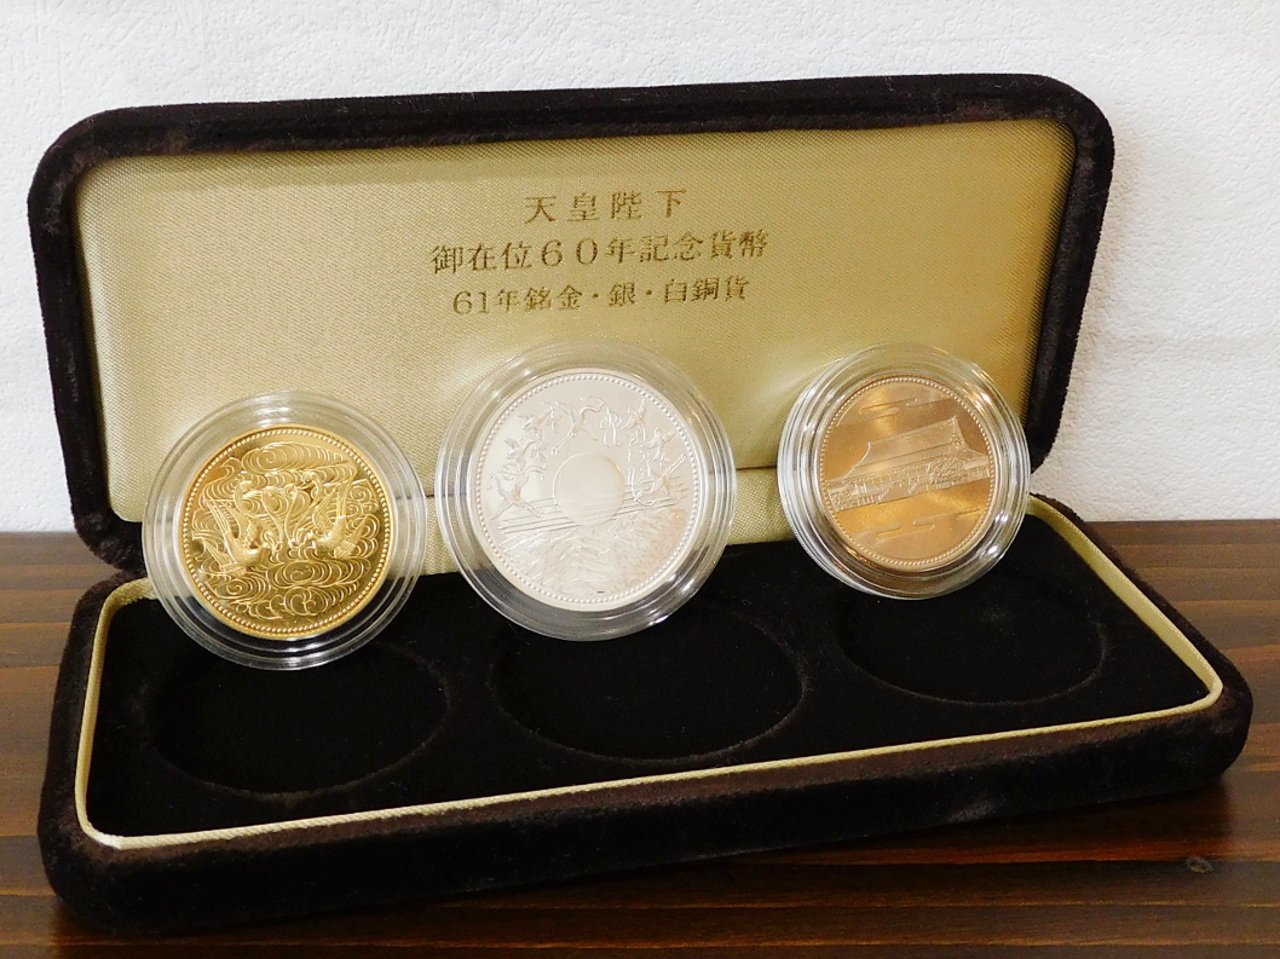 ホットセール激安 天皇御在位60年記念貨幣セット 旧貨幣/金貨/銀貨/記念硬貨